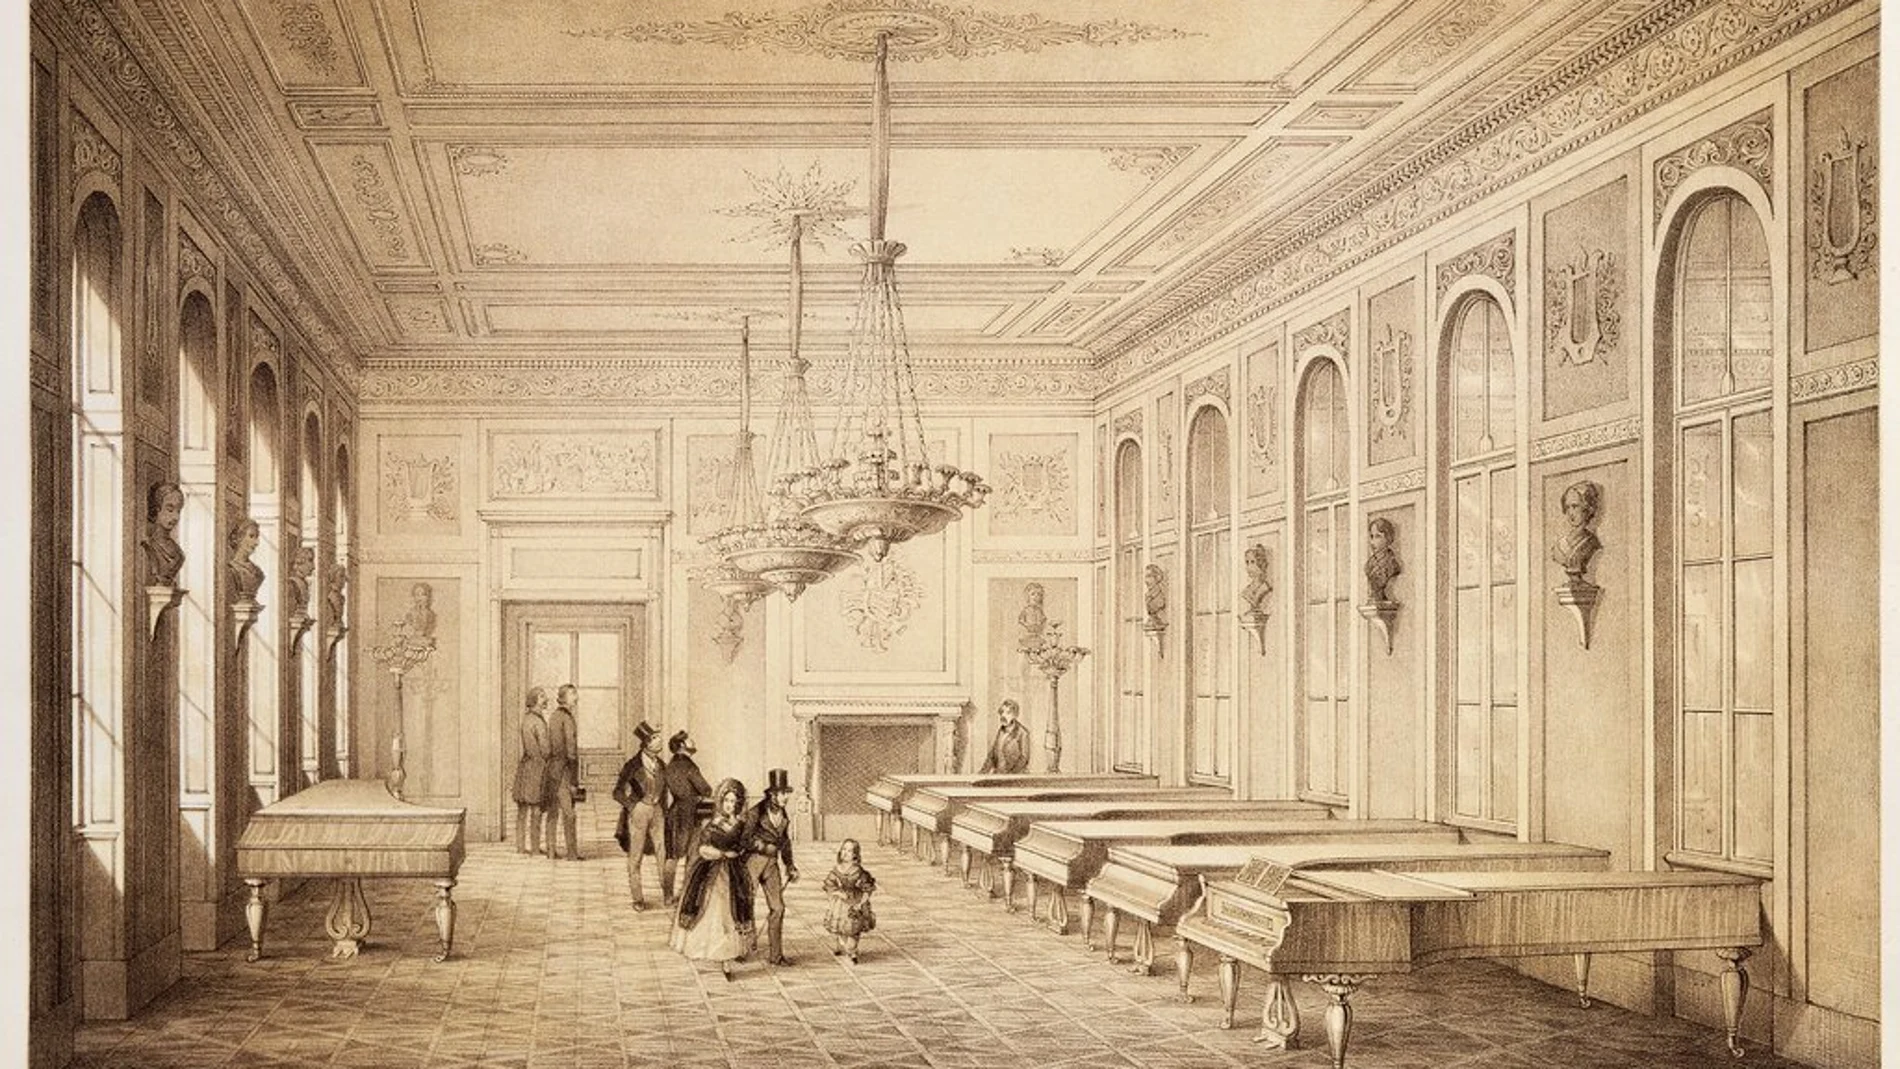 En 1812, Nanette construyó en Viena una sala de conciertos de 300 asientos que se convertiría en el centro musical de Austria